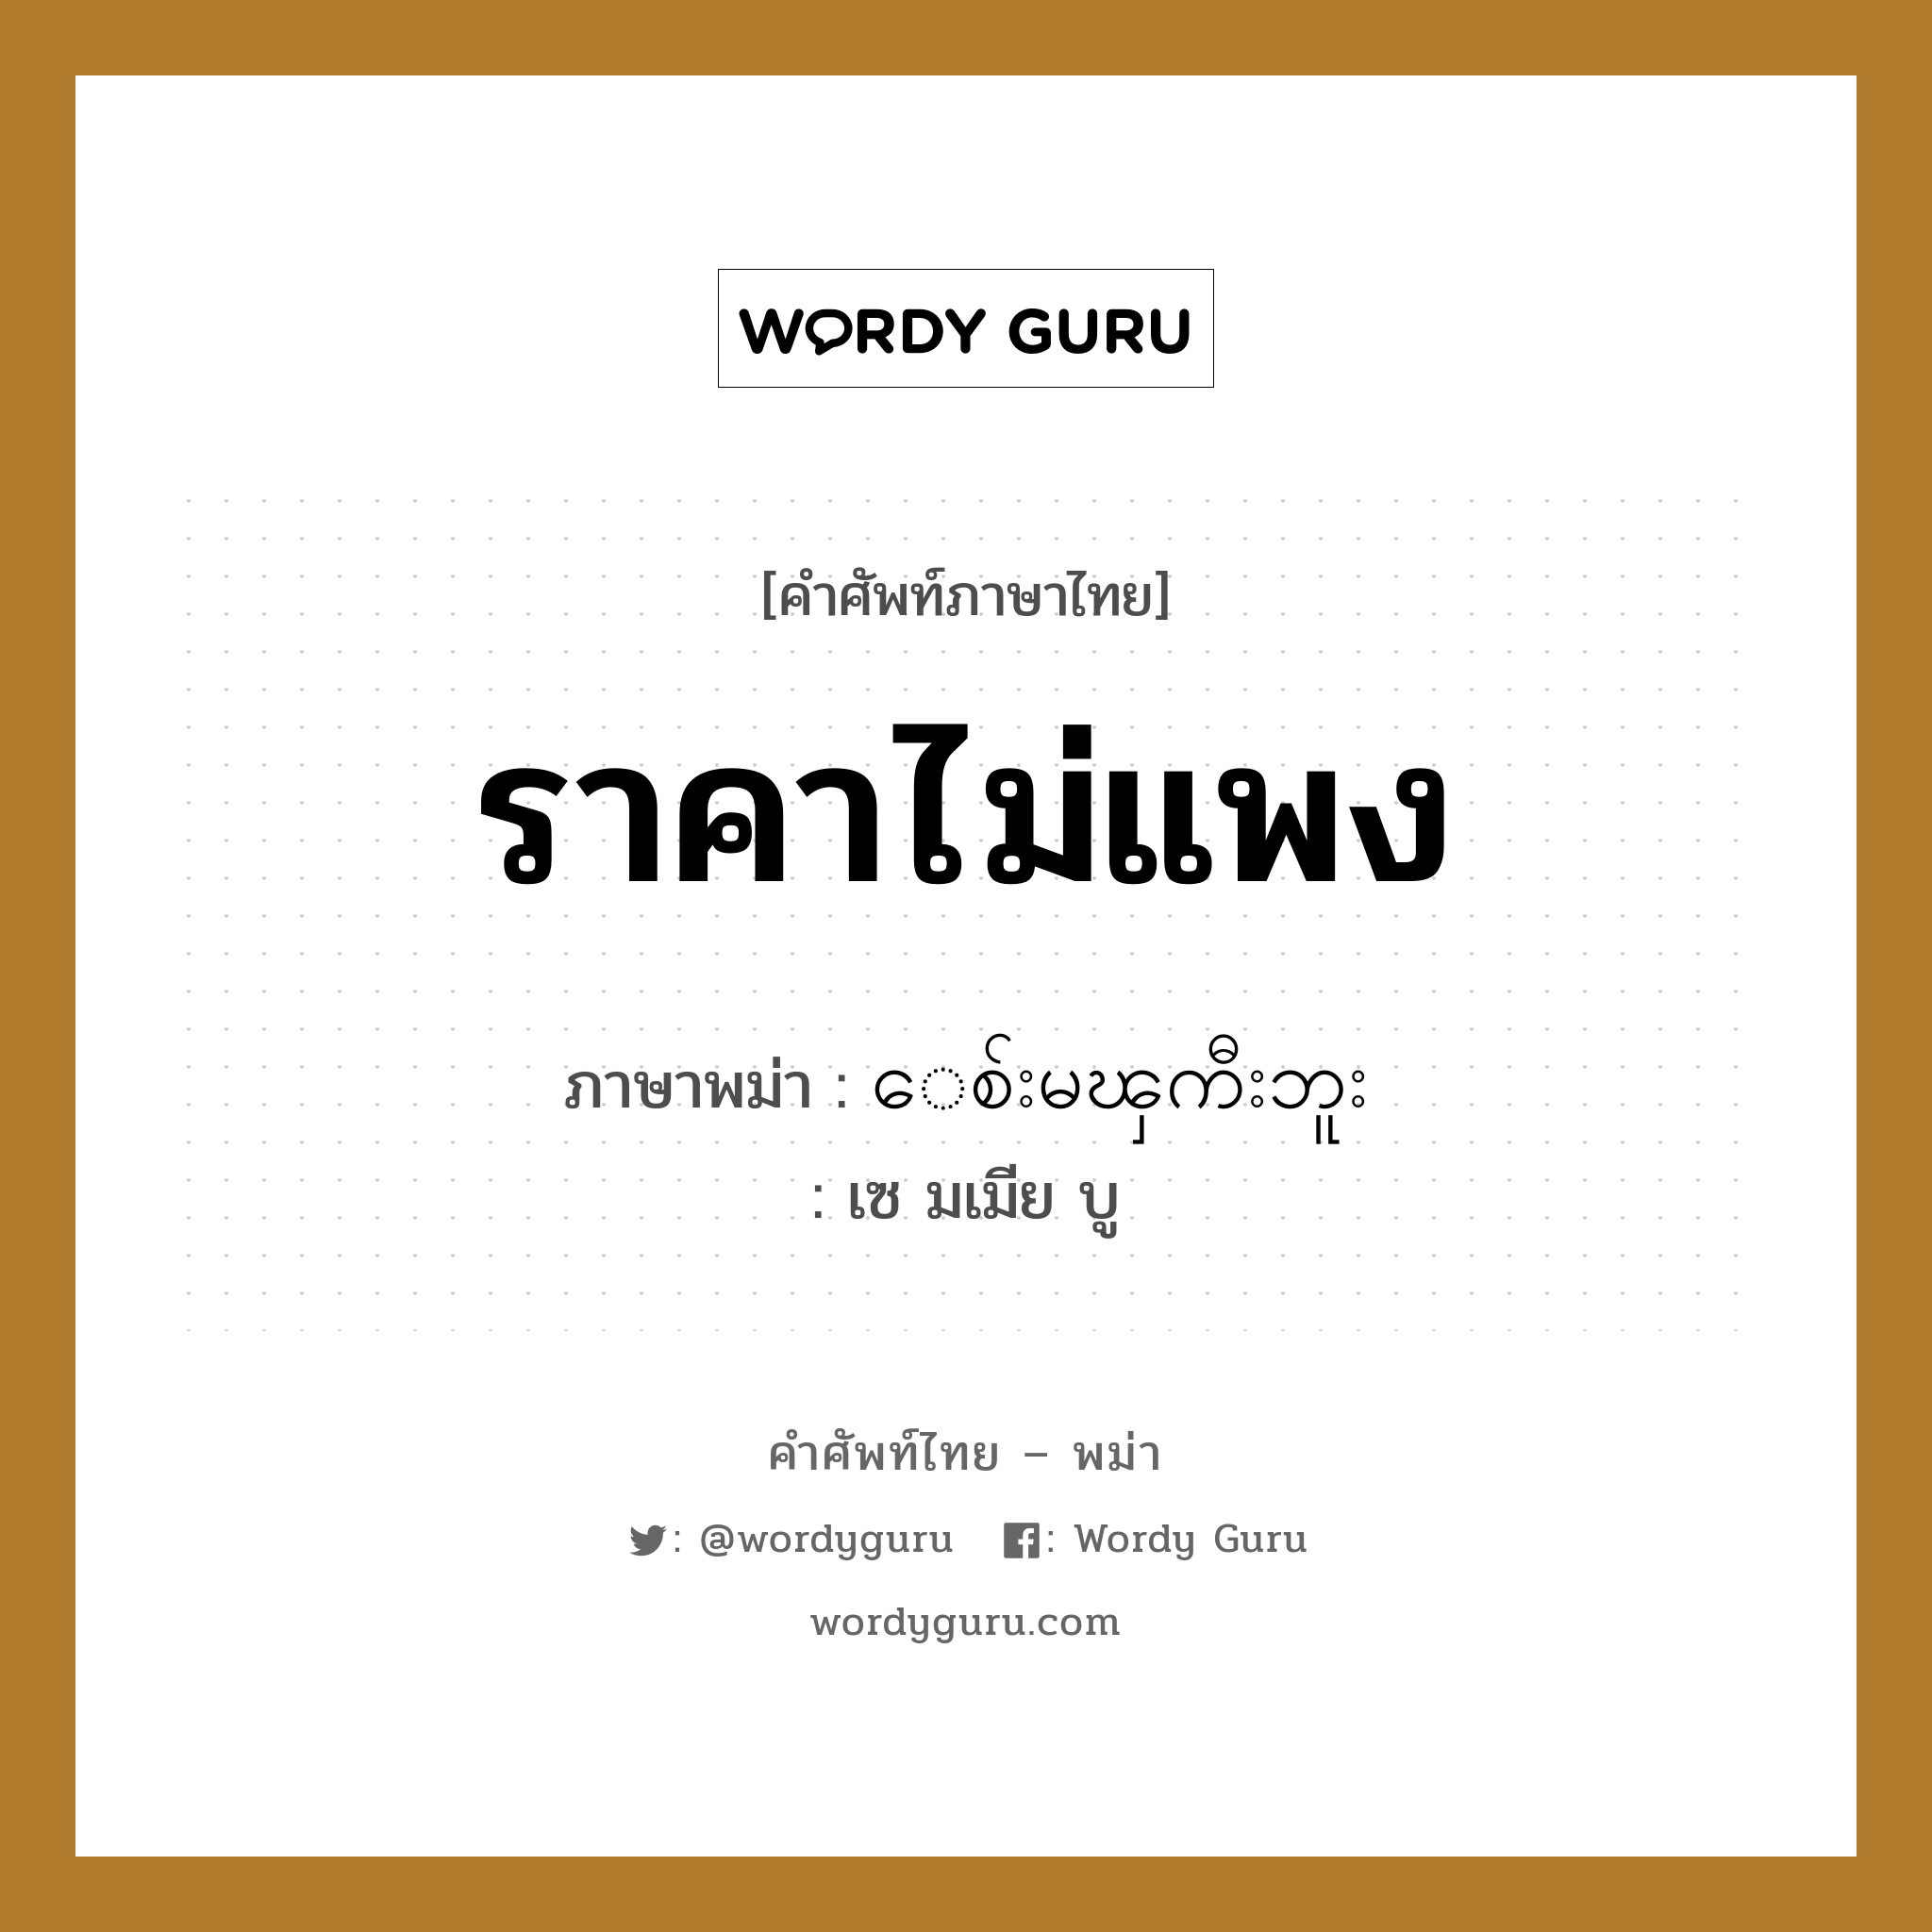 ราคาไม่แพง ภาษาพม่าคืออะไร, คำศัพท์ภาษาไทย - พม่า ราคาไม่แพง ภาษาพม่า ေစ်းမၾကီးဘူး หมวด บทสนทนาการซื้อขาย เซ มเมีย บู หมวด บทสนทนาการซื้อขาย